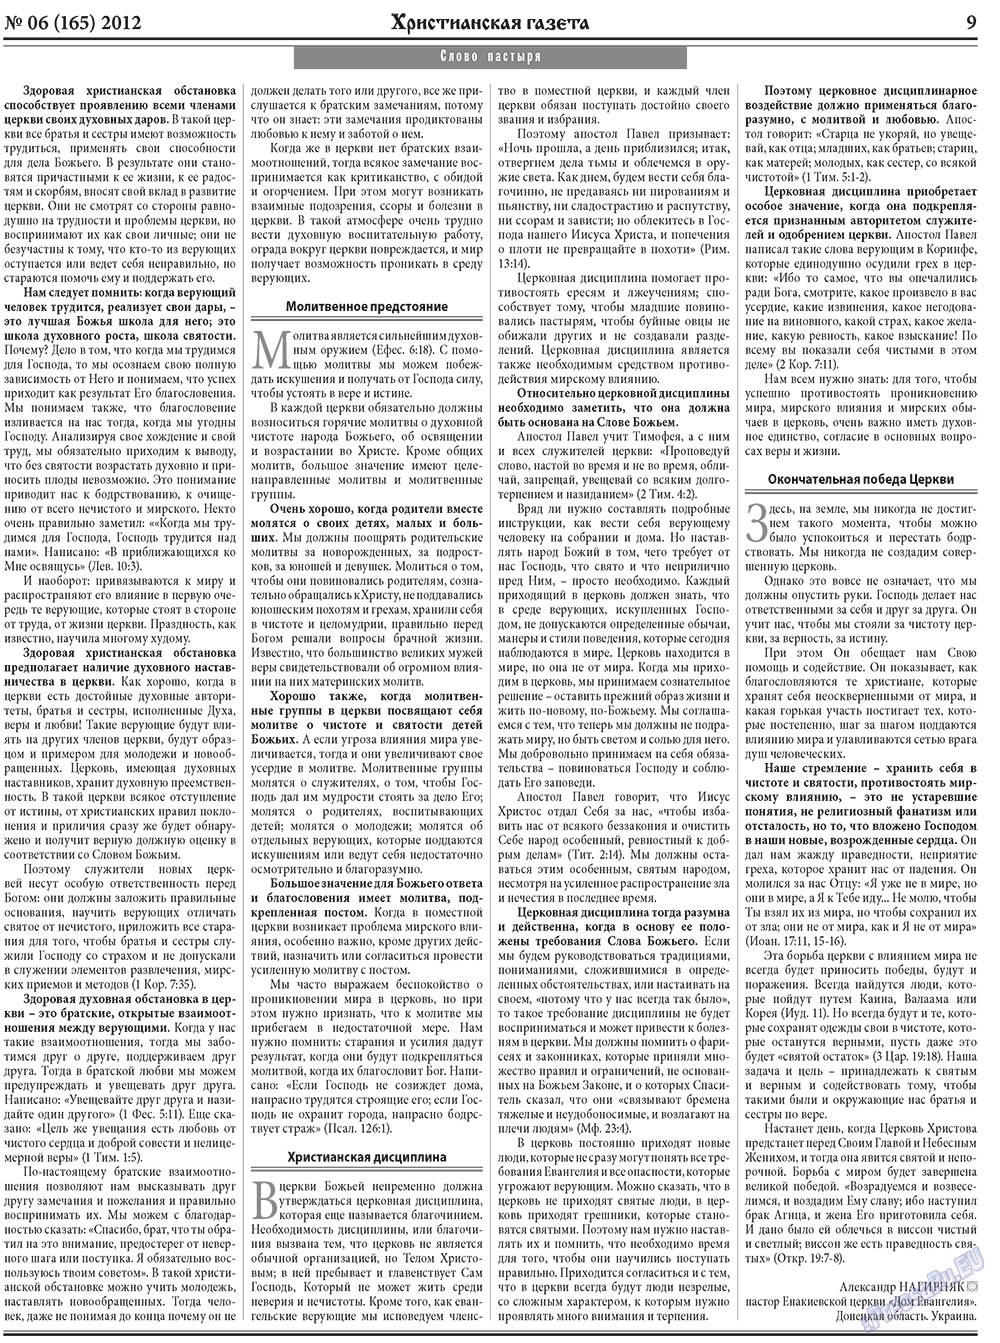 Христианская газета, газета. 2012 №6 стр.9